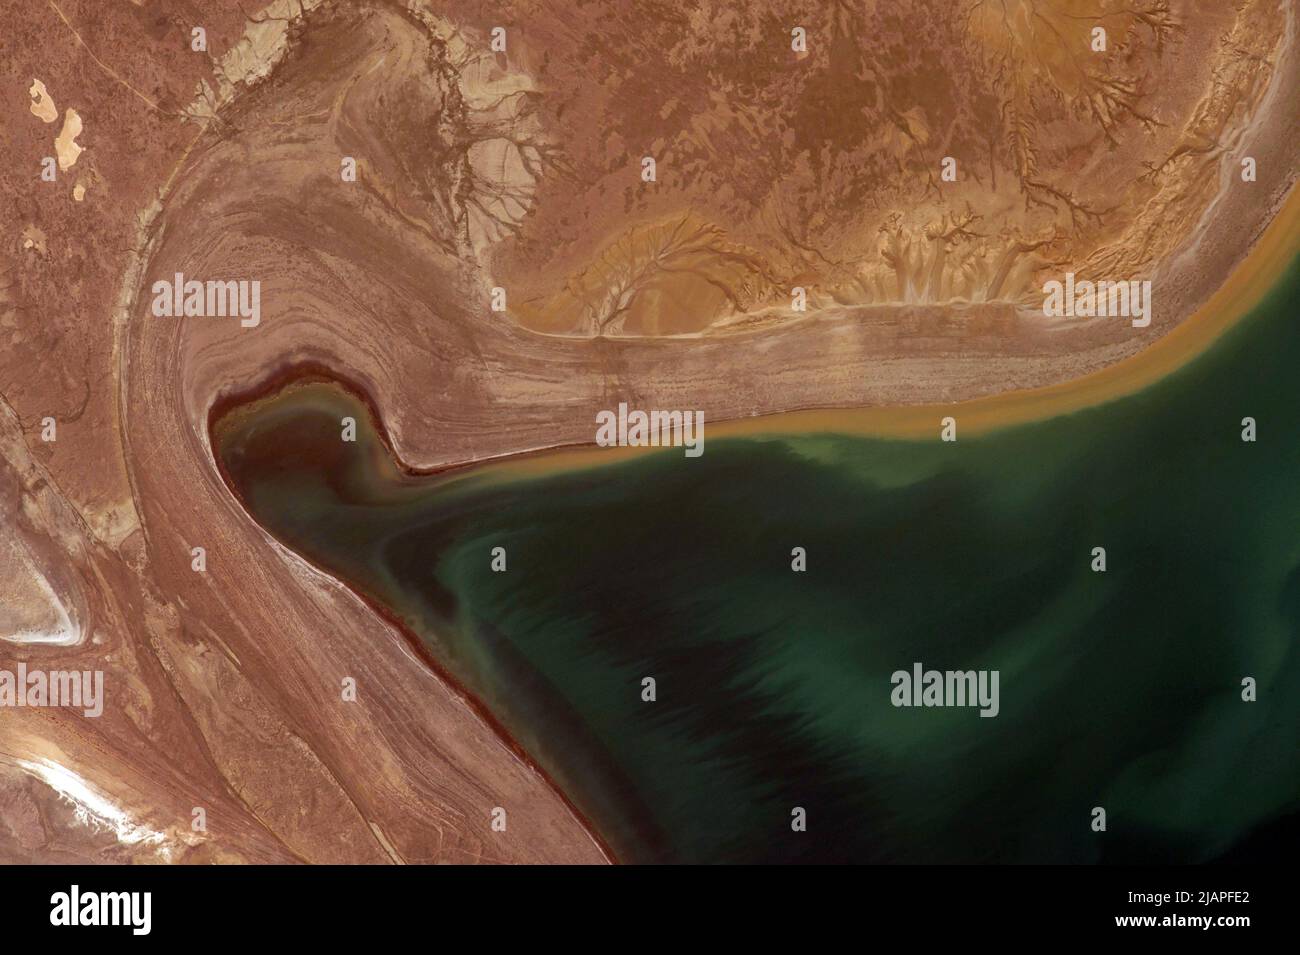 Tierra desde arriba: Detalle del Mar de Aral tomado de la Estación Espacial Internacional mostrando niveles de agua que caen. Kazajstán, Asia Central Una versión optimizada y mejorada digitalmente de una imagen de la NASA / crédito de la NASA Foto de stock